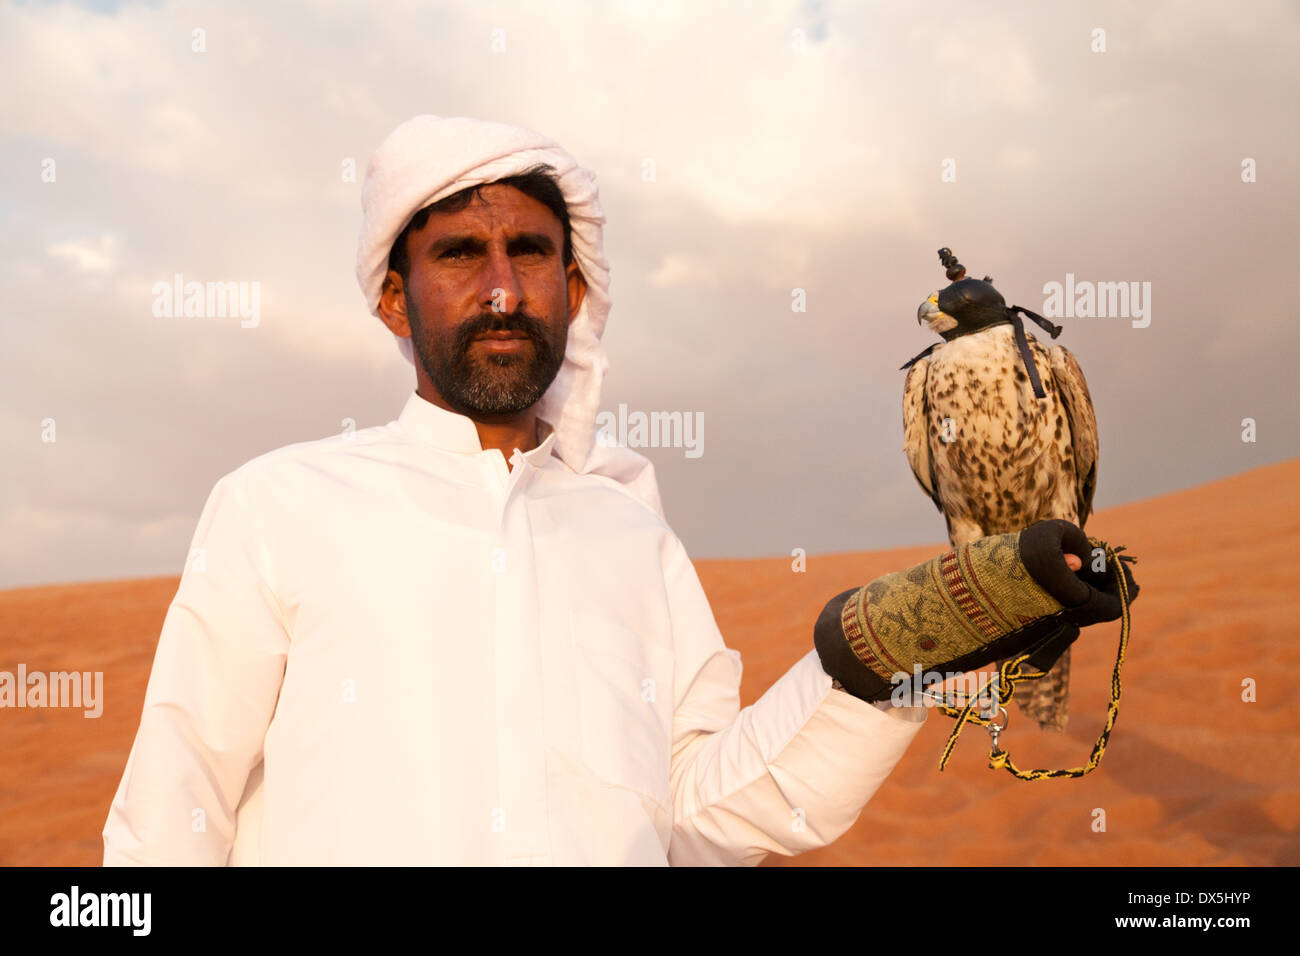 Ein Beduinen-Araber mit einem zahmen Falken posieren für die Touristen, die Arabische Wüste, Dubai, Vereinigte Arabische Emirate, Vereinigte Arabische Emirate, Naher Osten Stockfoto